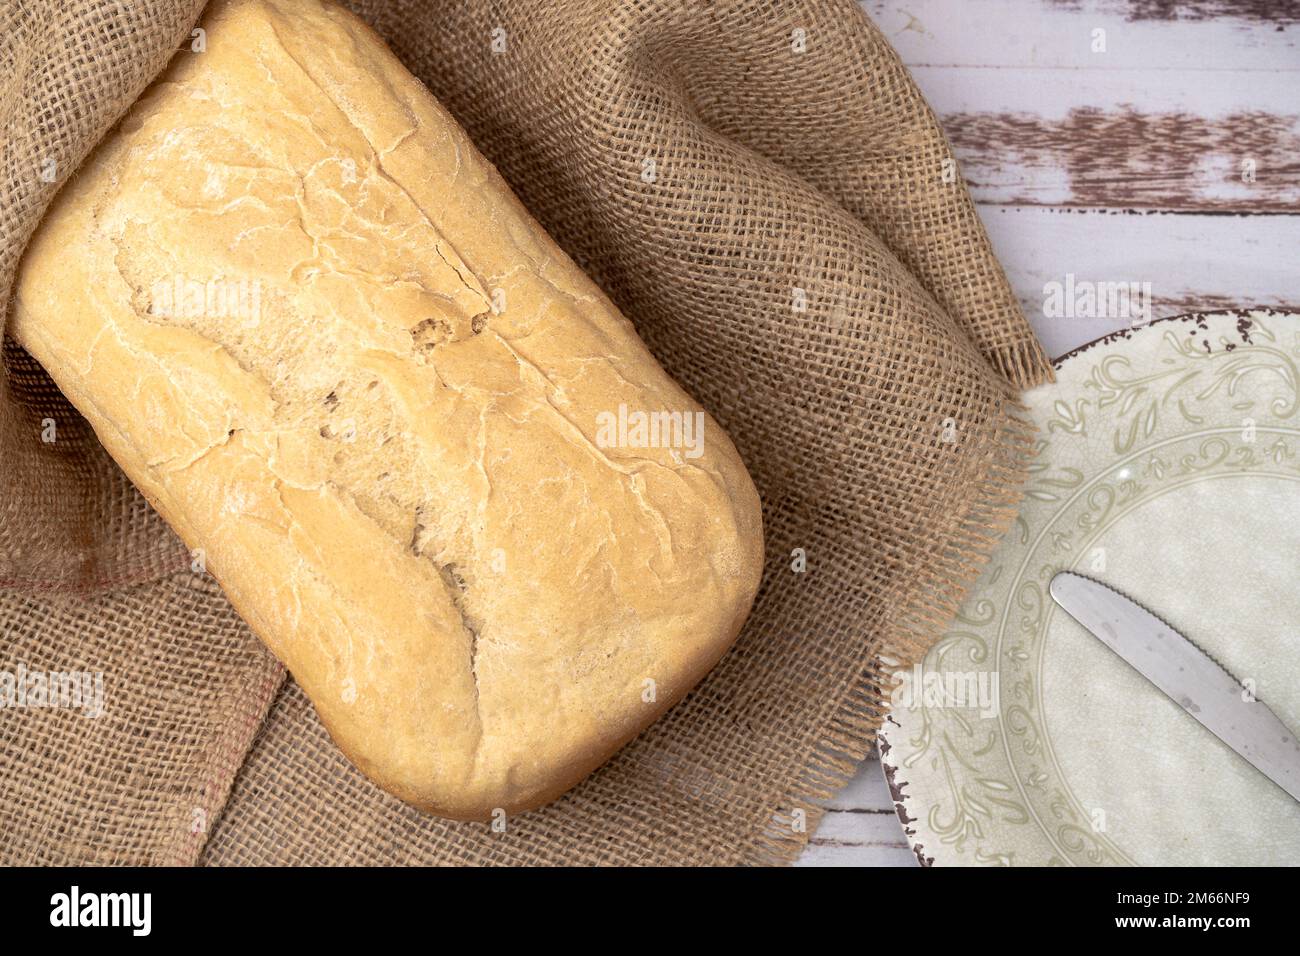 Aus der Vogelperspektive hausgemachtes Brot, das aus einer gewöhnlichen Brotmaschine hergestellt wurde. Stockfoto